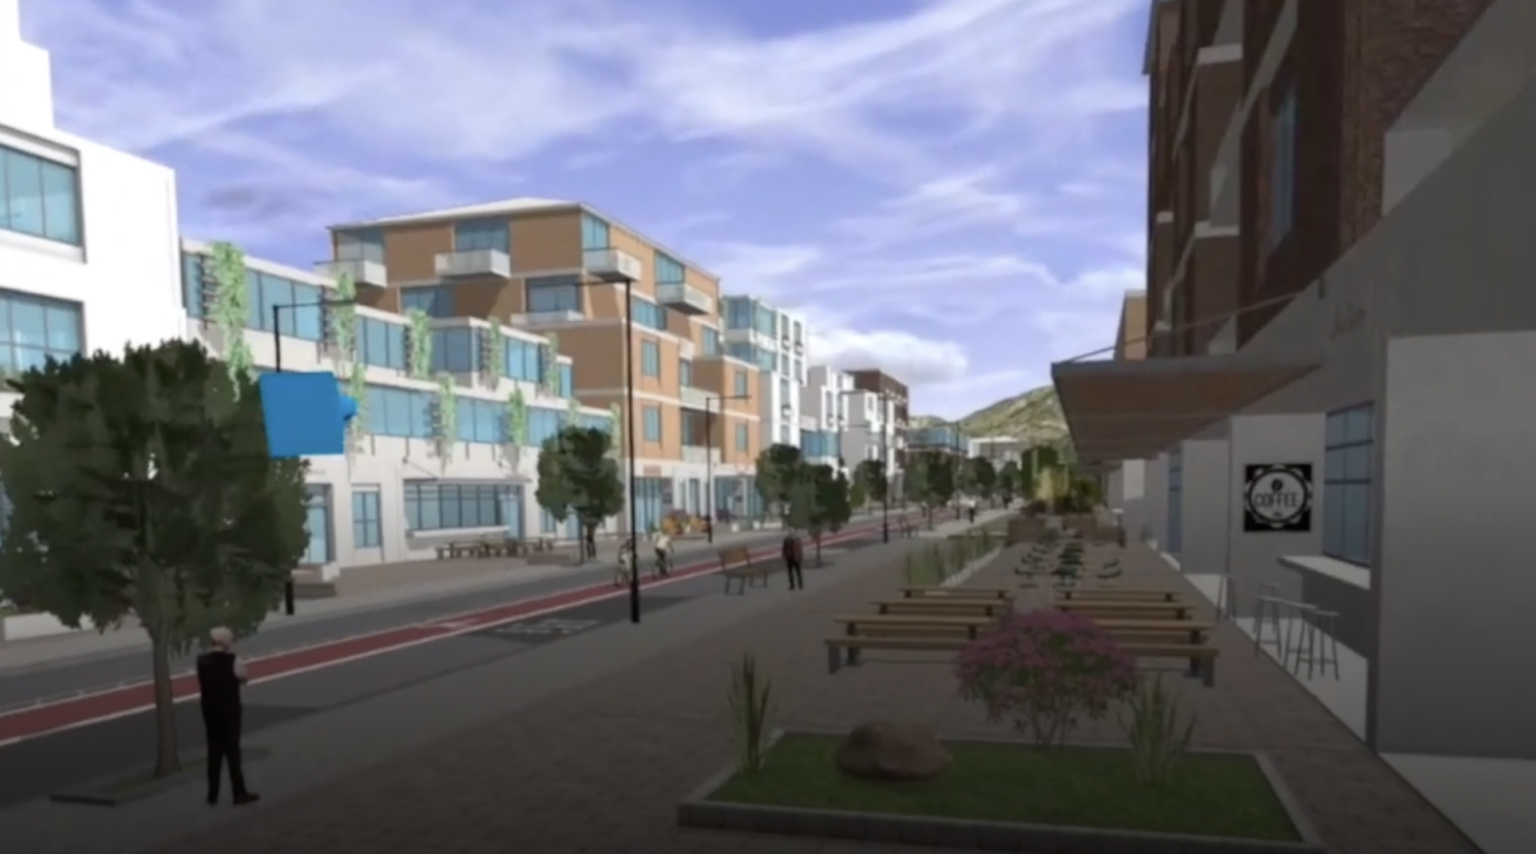 مشهد ثلاثي الأبعاد لمربع سكني في إحدى المدن به مبانٍ وطريق وأشجار خضراء يتم عرضها من خلال سماعة رأس بتقنية الواقع الافتراضي